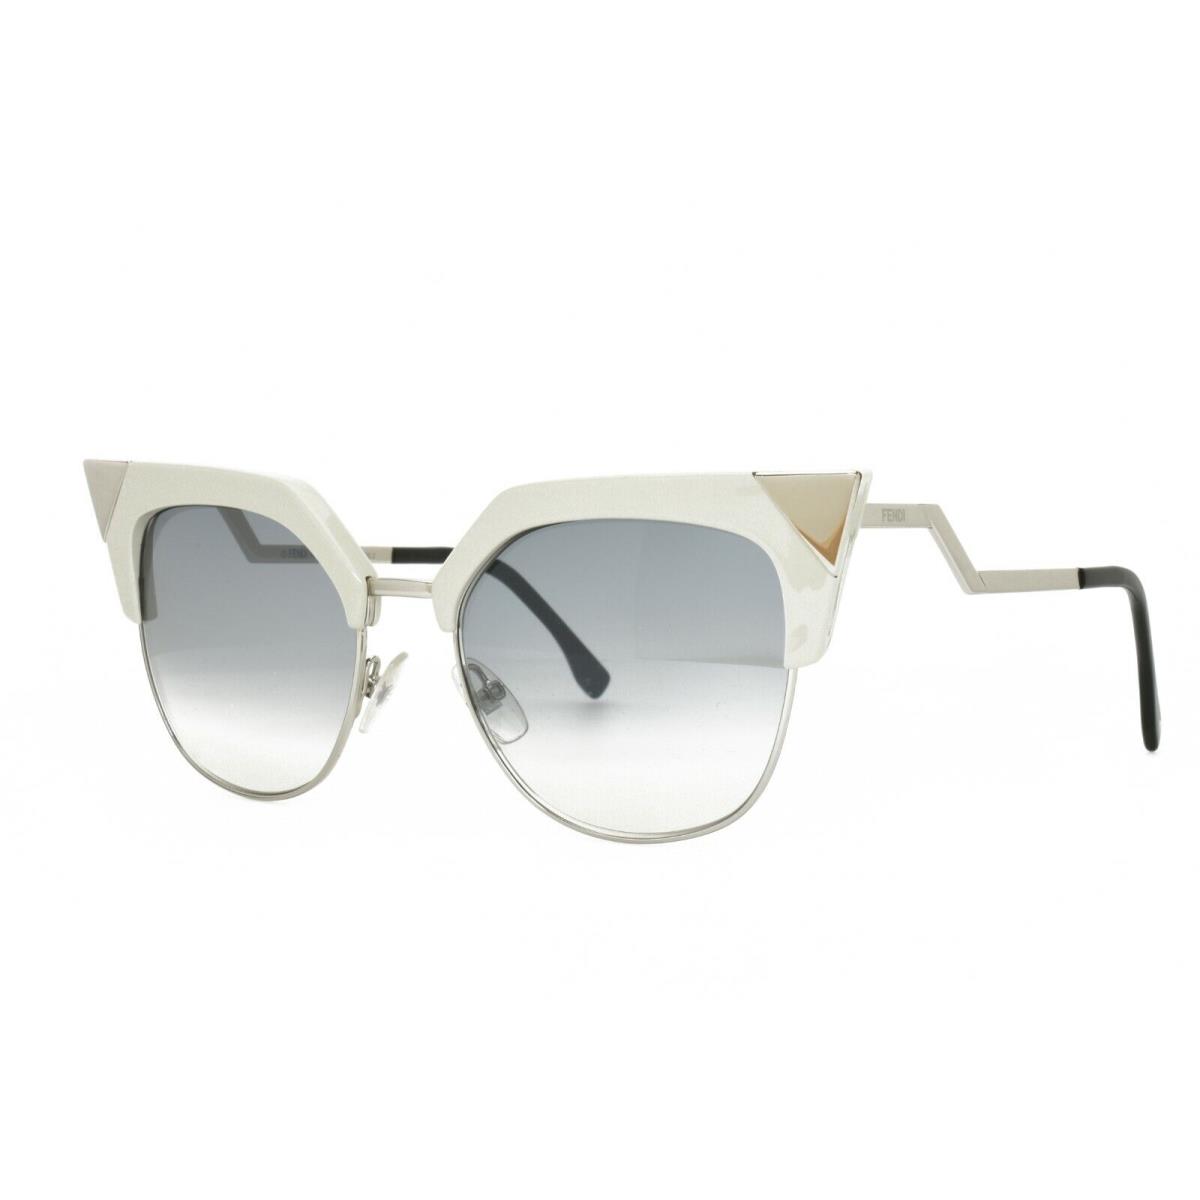 Fendi 0149/S Tlyek Sunglasses 54-18-140 Beige Palladium - Frame: Off white, Lens: Gray